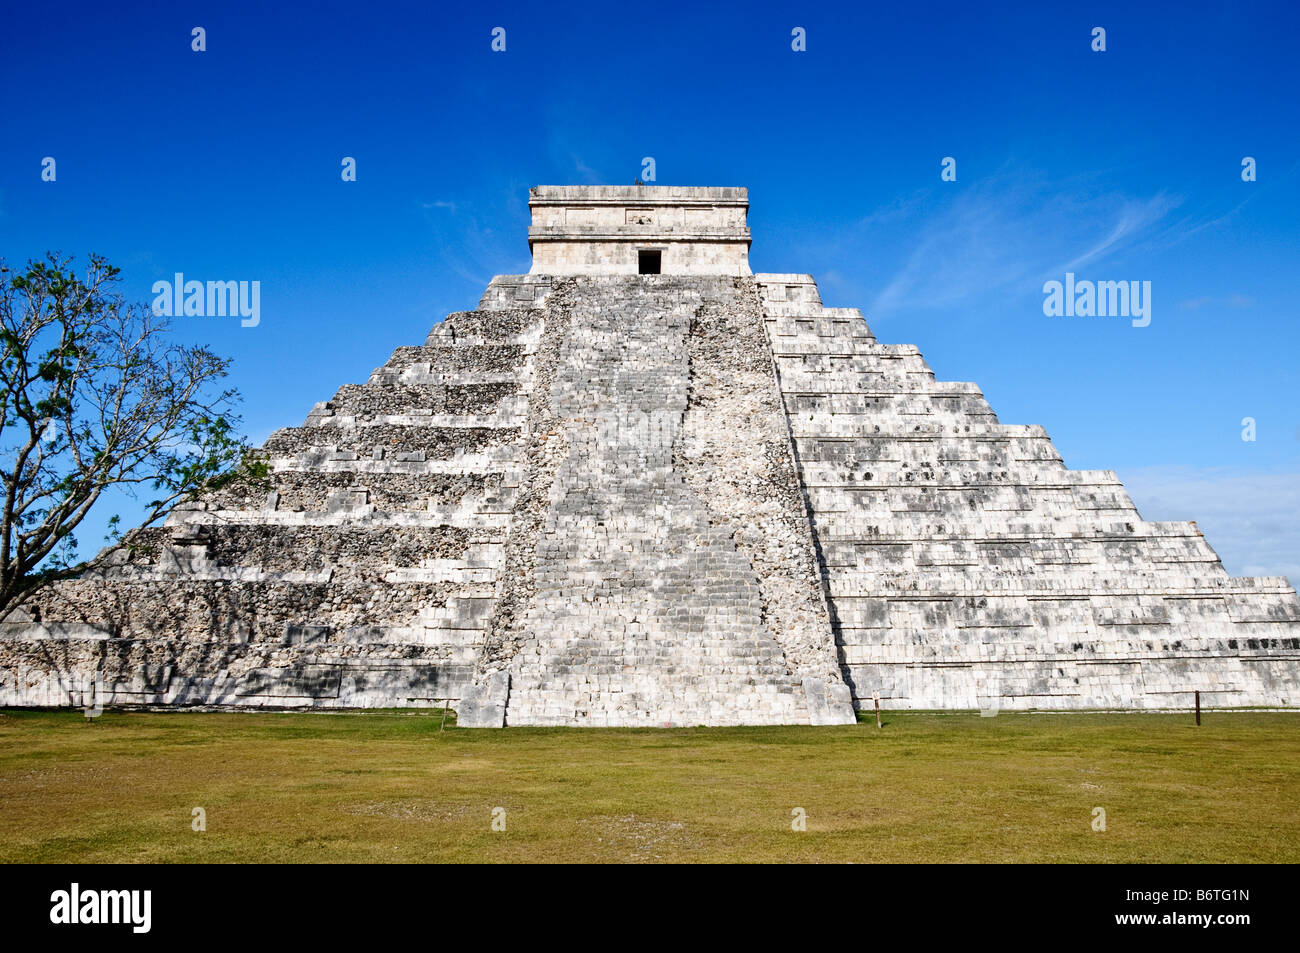 CHICHEN ITZA, Mexico - El Castillo (also known as Temple of Kuklcan) at the ancient Mayan ruins at Chichen Itza, Yucatan, Mexico 081216092500 4396.NEF Stock Photo